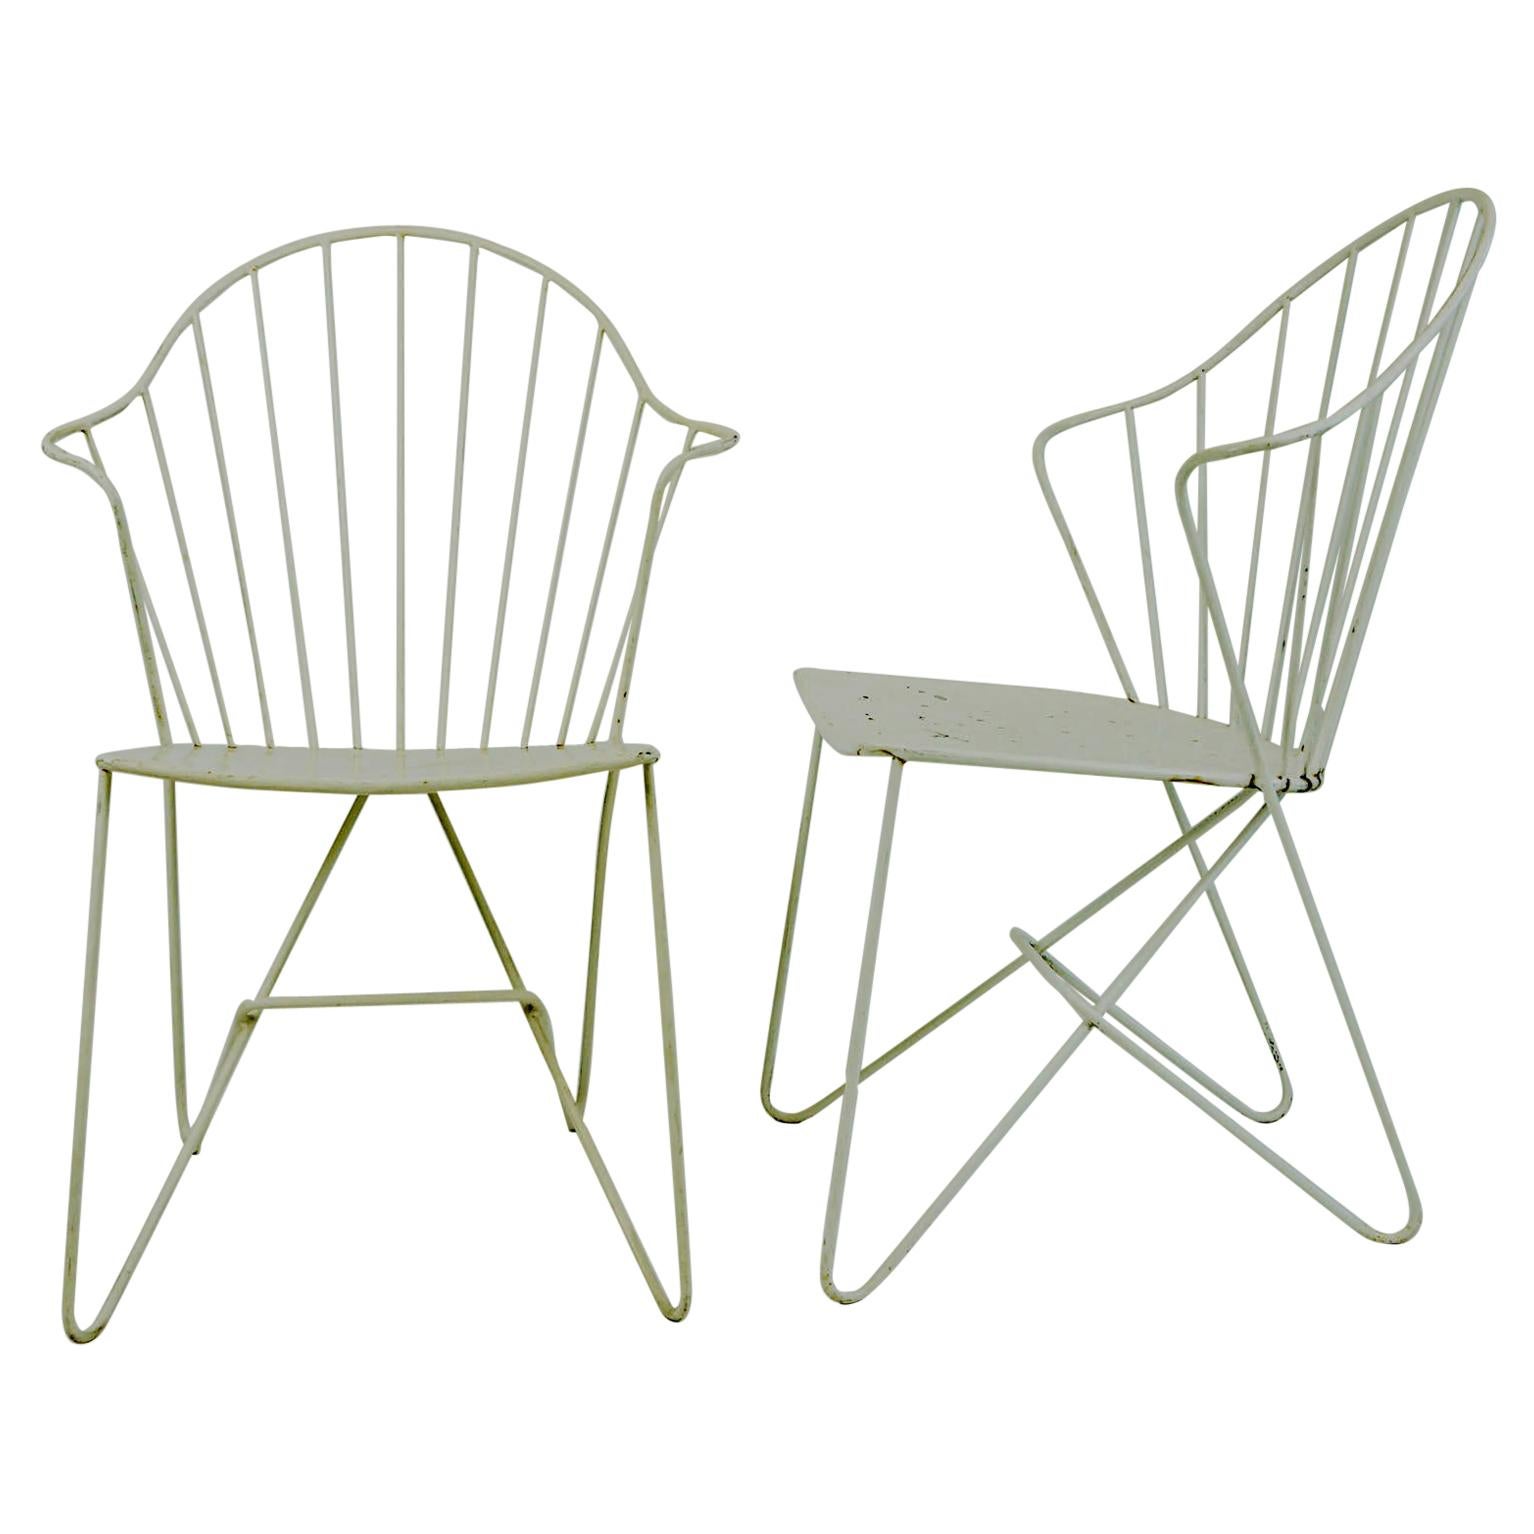 Two white Austrian Midcentury Wire Sonett Astoria Chairs